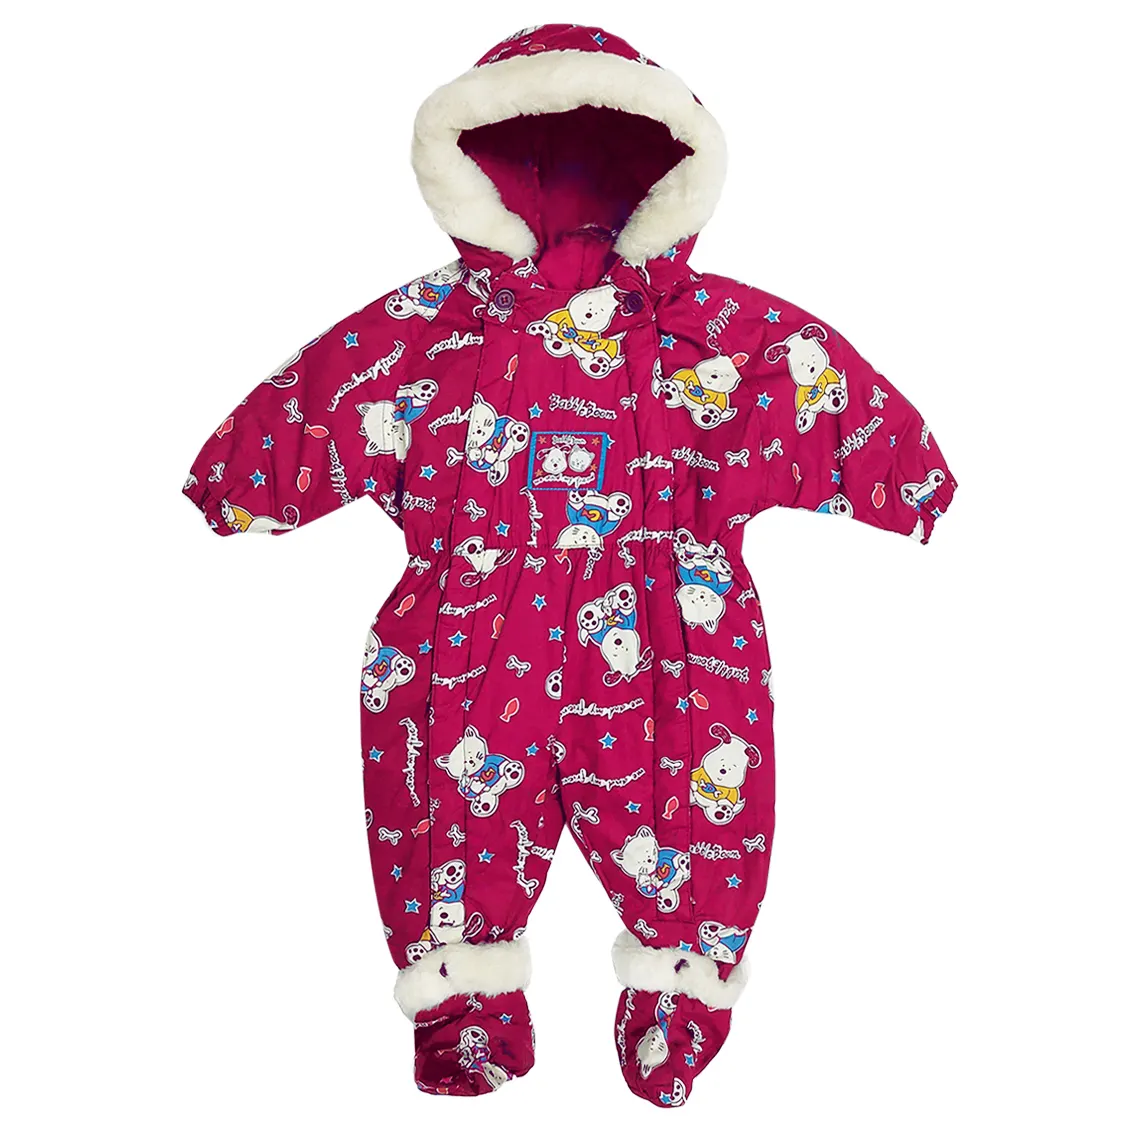 Bebés ODM alta calidad niños poliéster algodón todo en uno invierno cálido rosa traje de esquí bebé allover acolchado traje de nieve